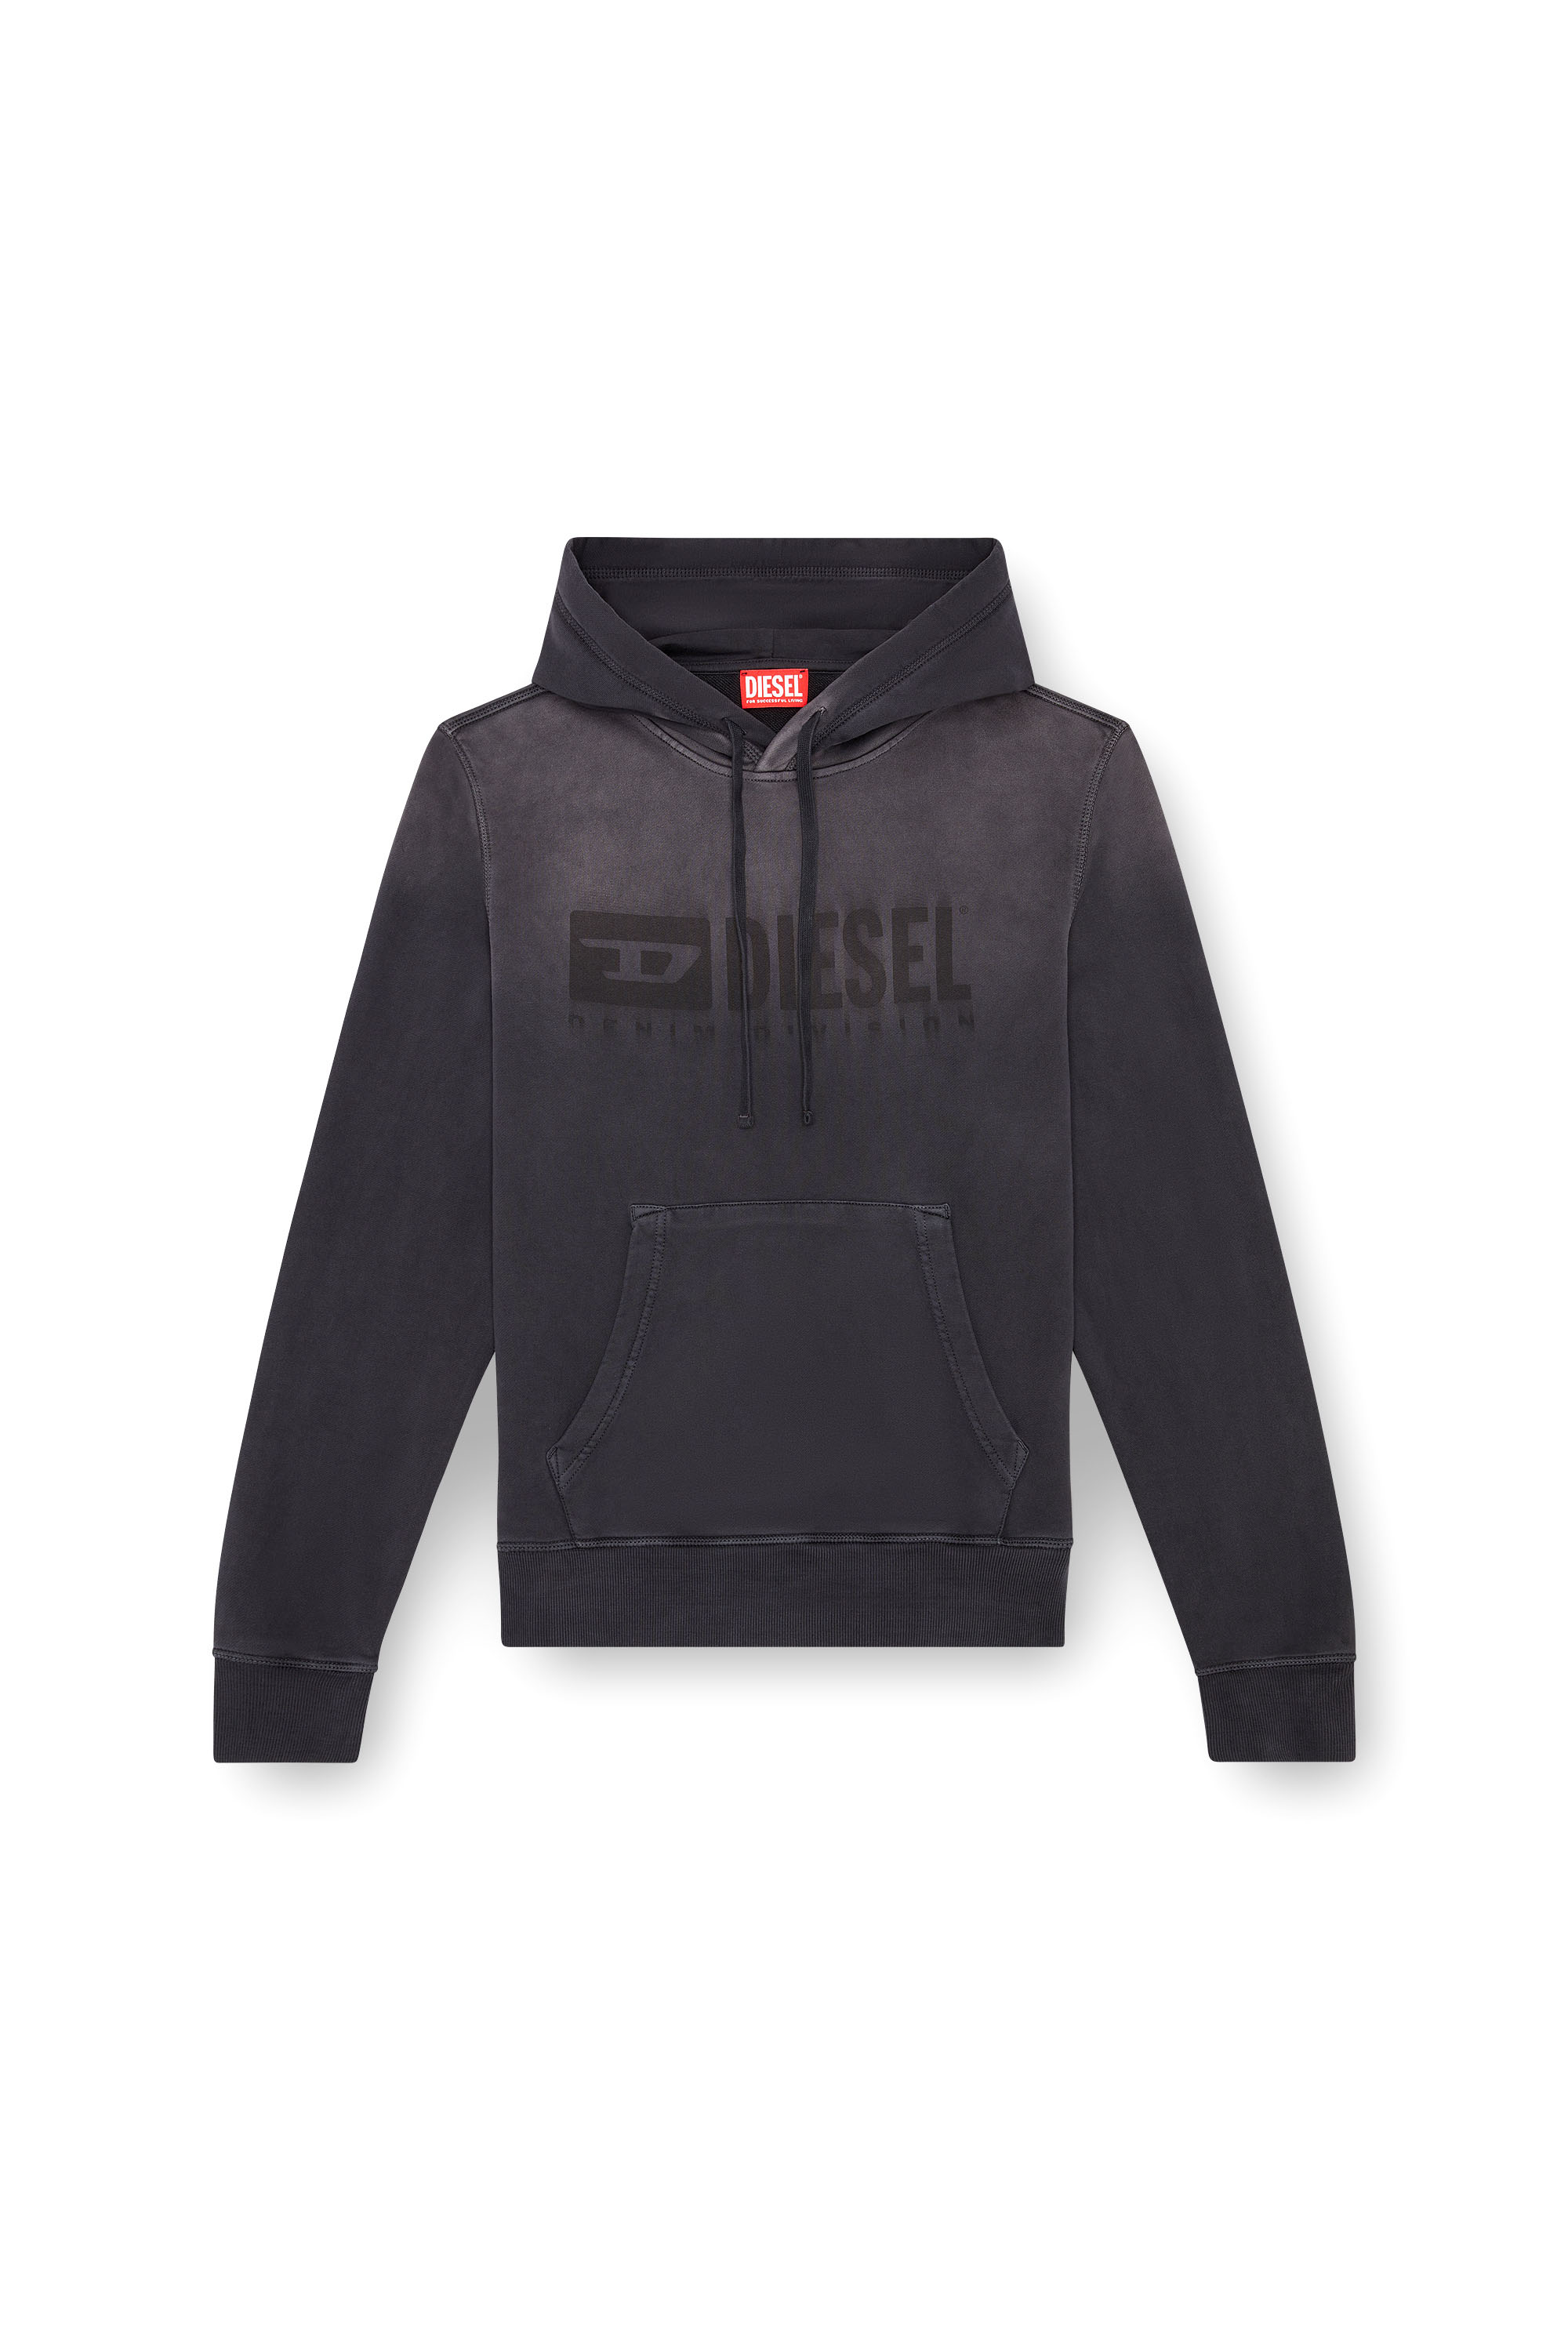 Diesel - S-GINN-HOOD-K44, Man Faded hoodie with Denim Division logo in Black - Image 3